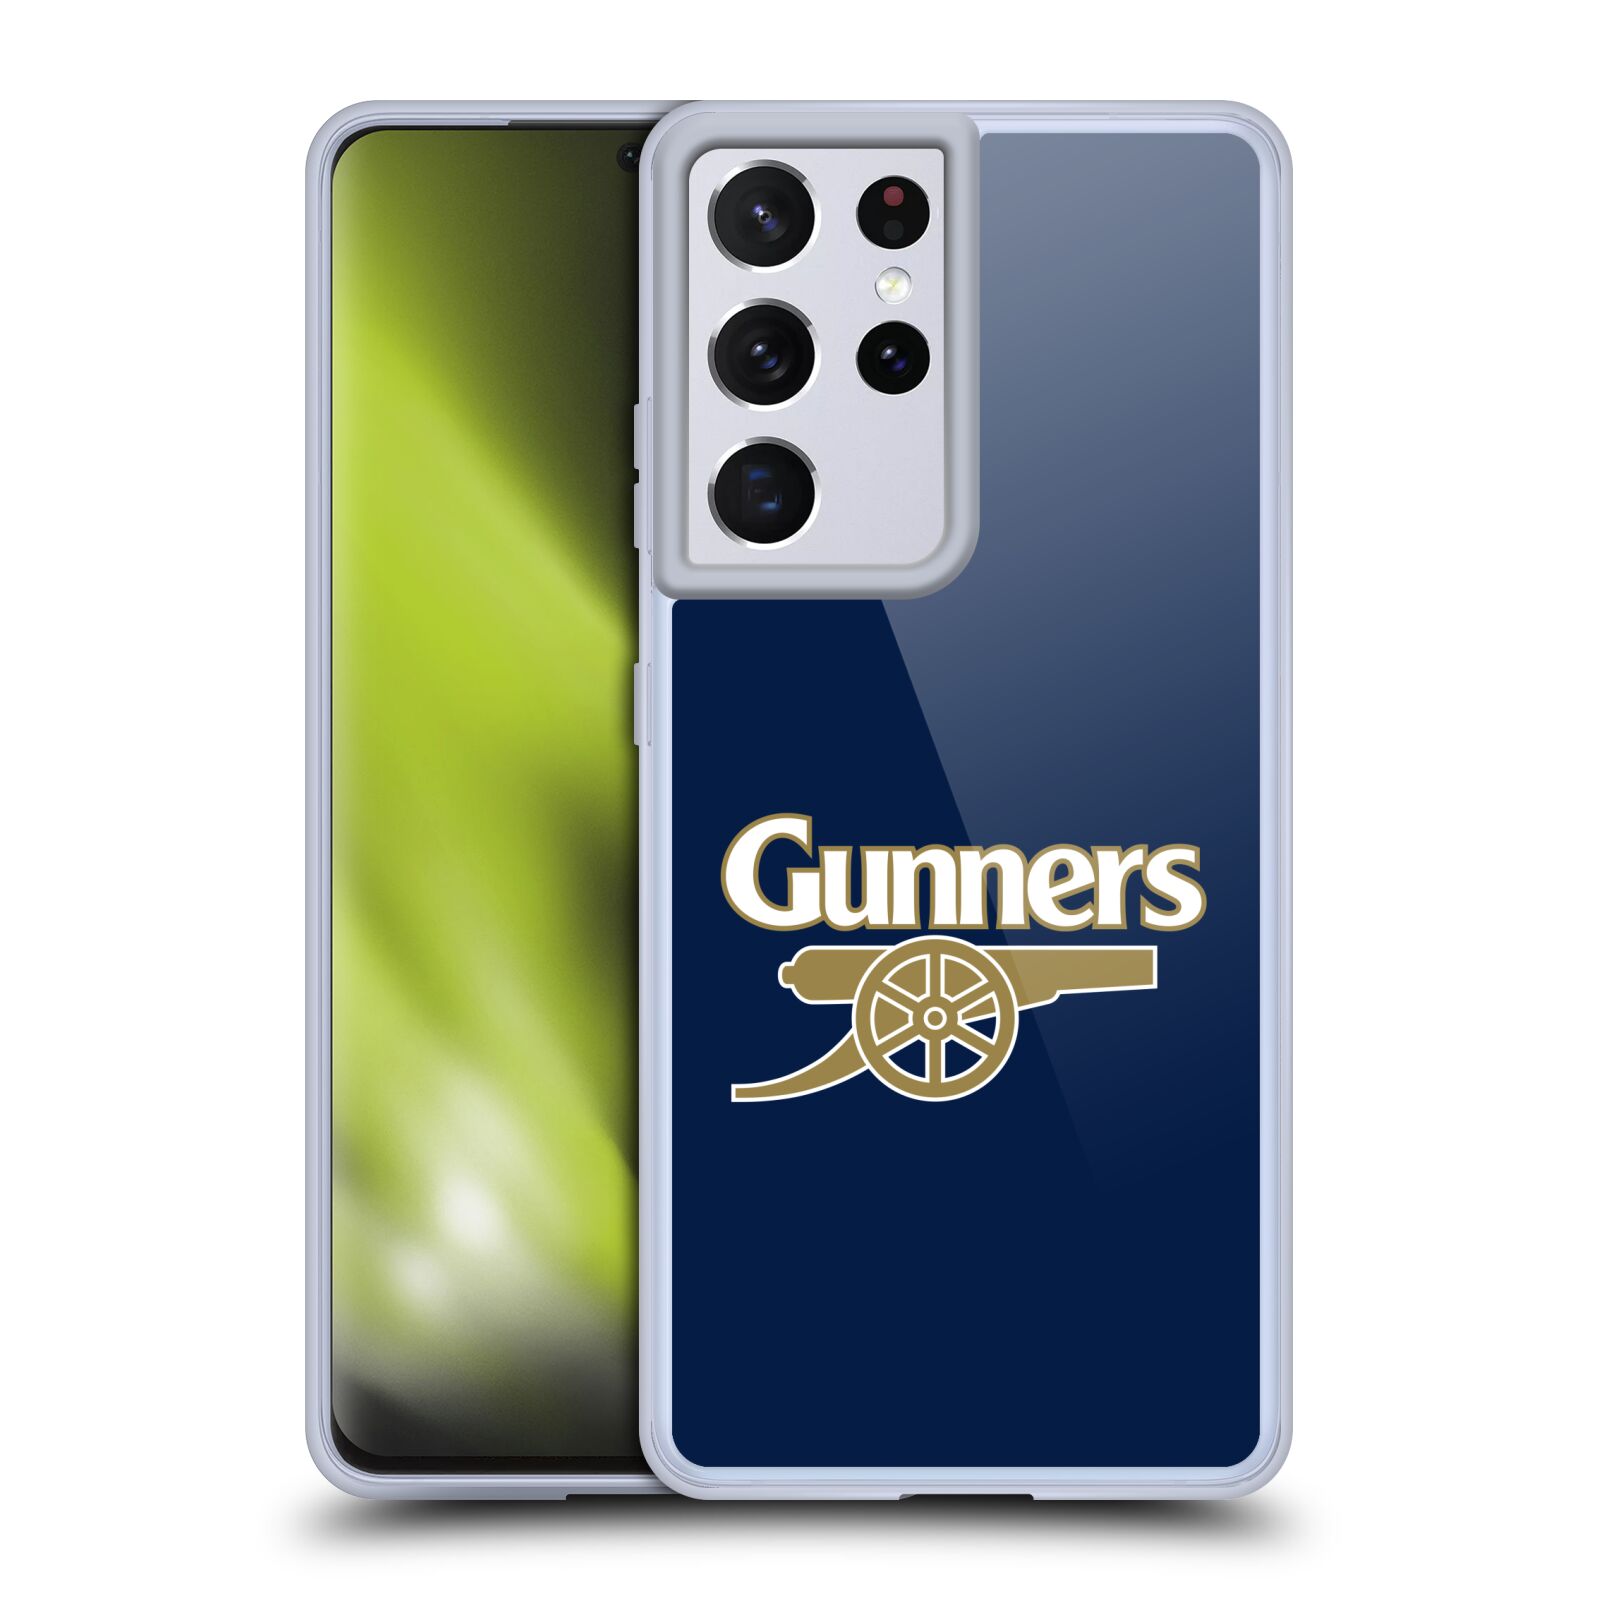 Silikonové pouzdro na mobil Samsung Galaxy S21 Ultra 5G - Head Case - Arsenal FC - Gunners (Silikonový kryt, obal, pouzdro na mobilní telefon s motivem klubu Arsenal FC - Gunners pro Samsung Galaxy S21 Ultra 5G G998B)